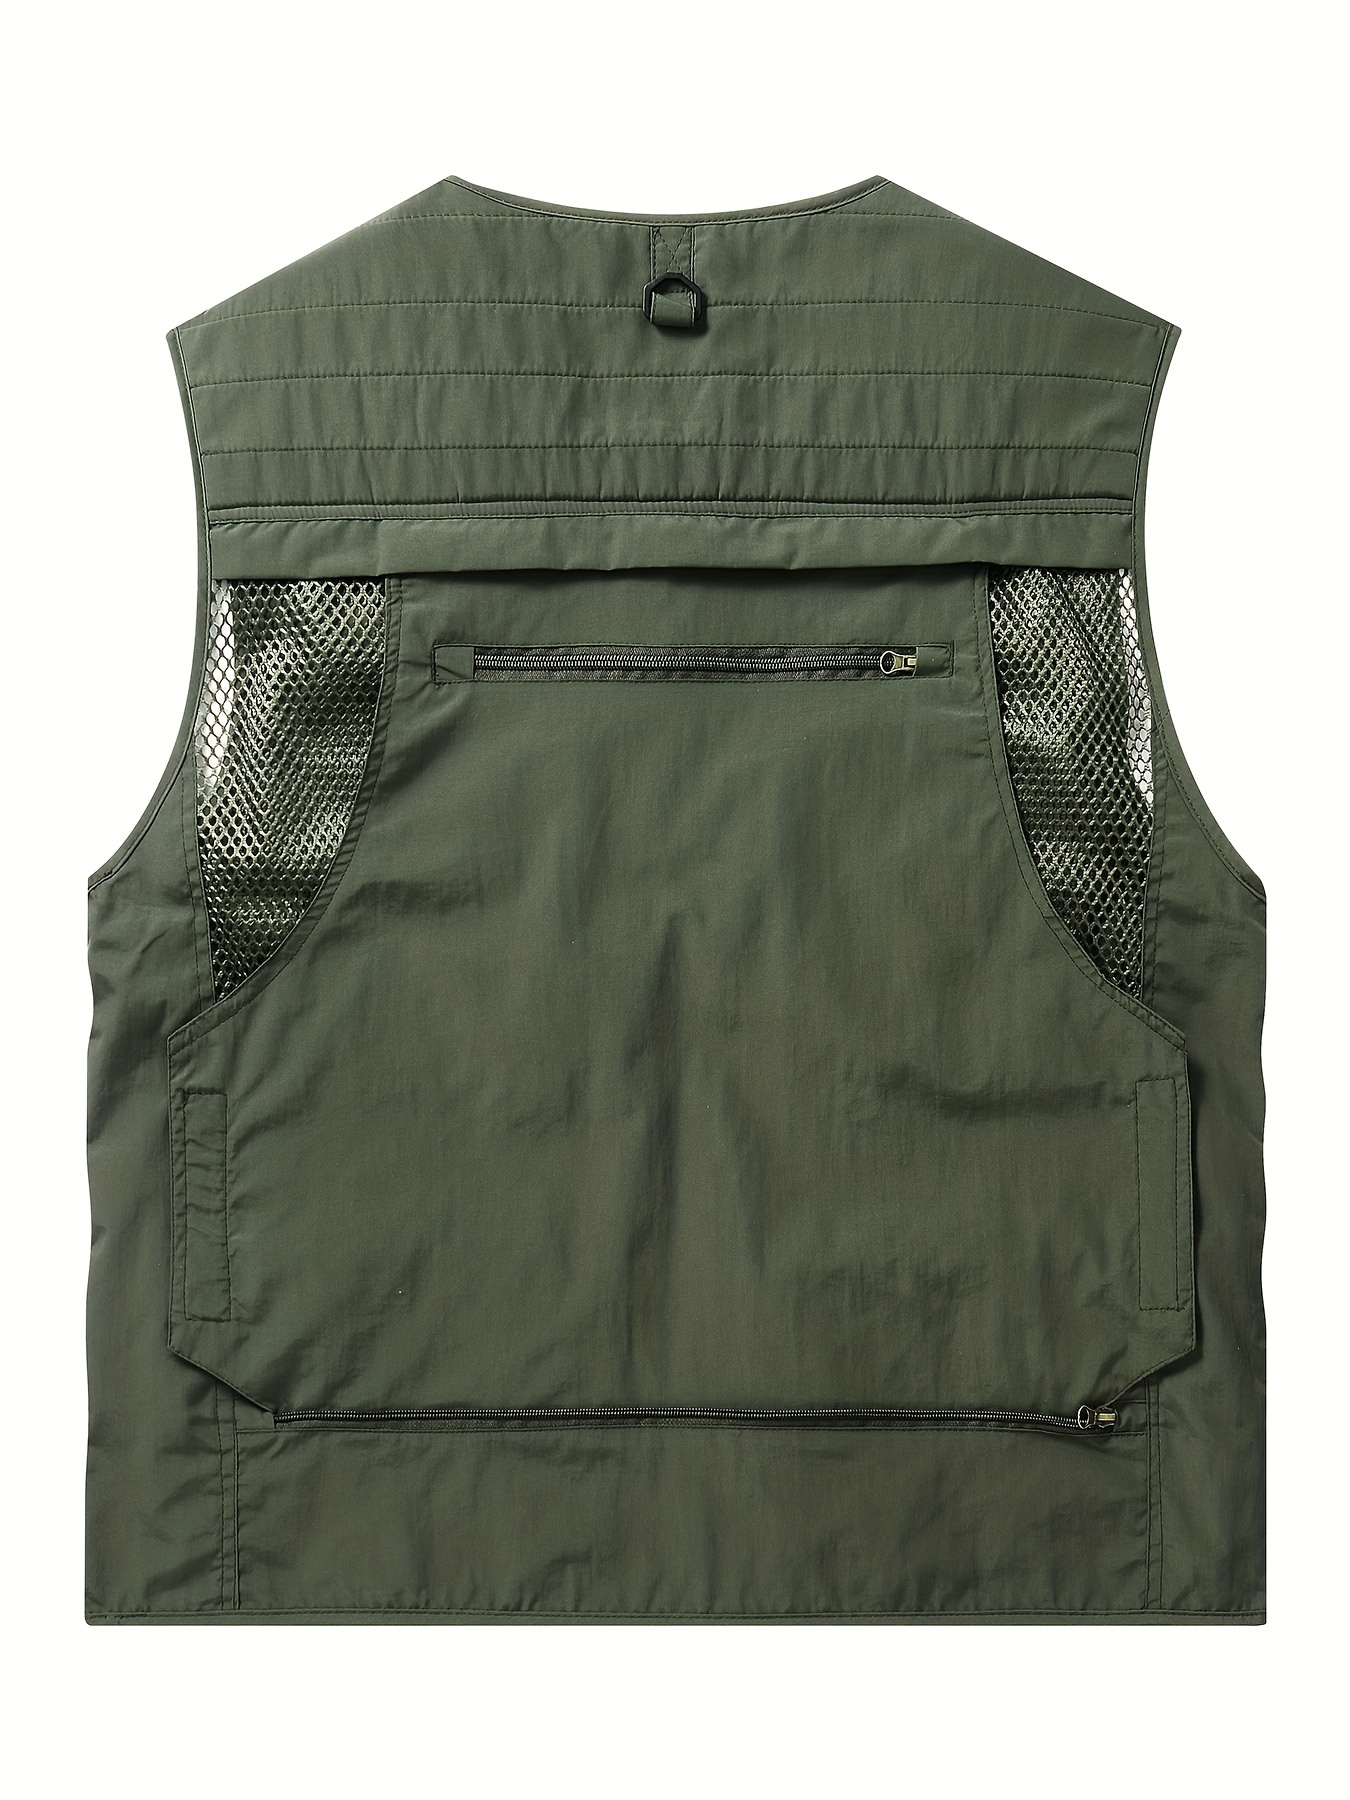 Fishing Hiking Vest, Tactical Vest